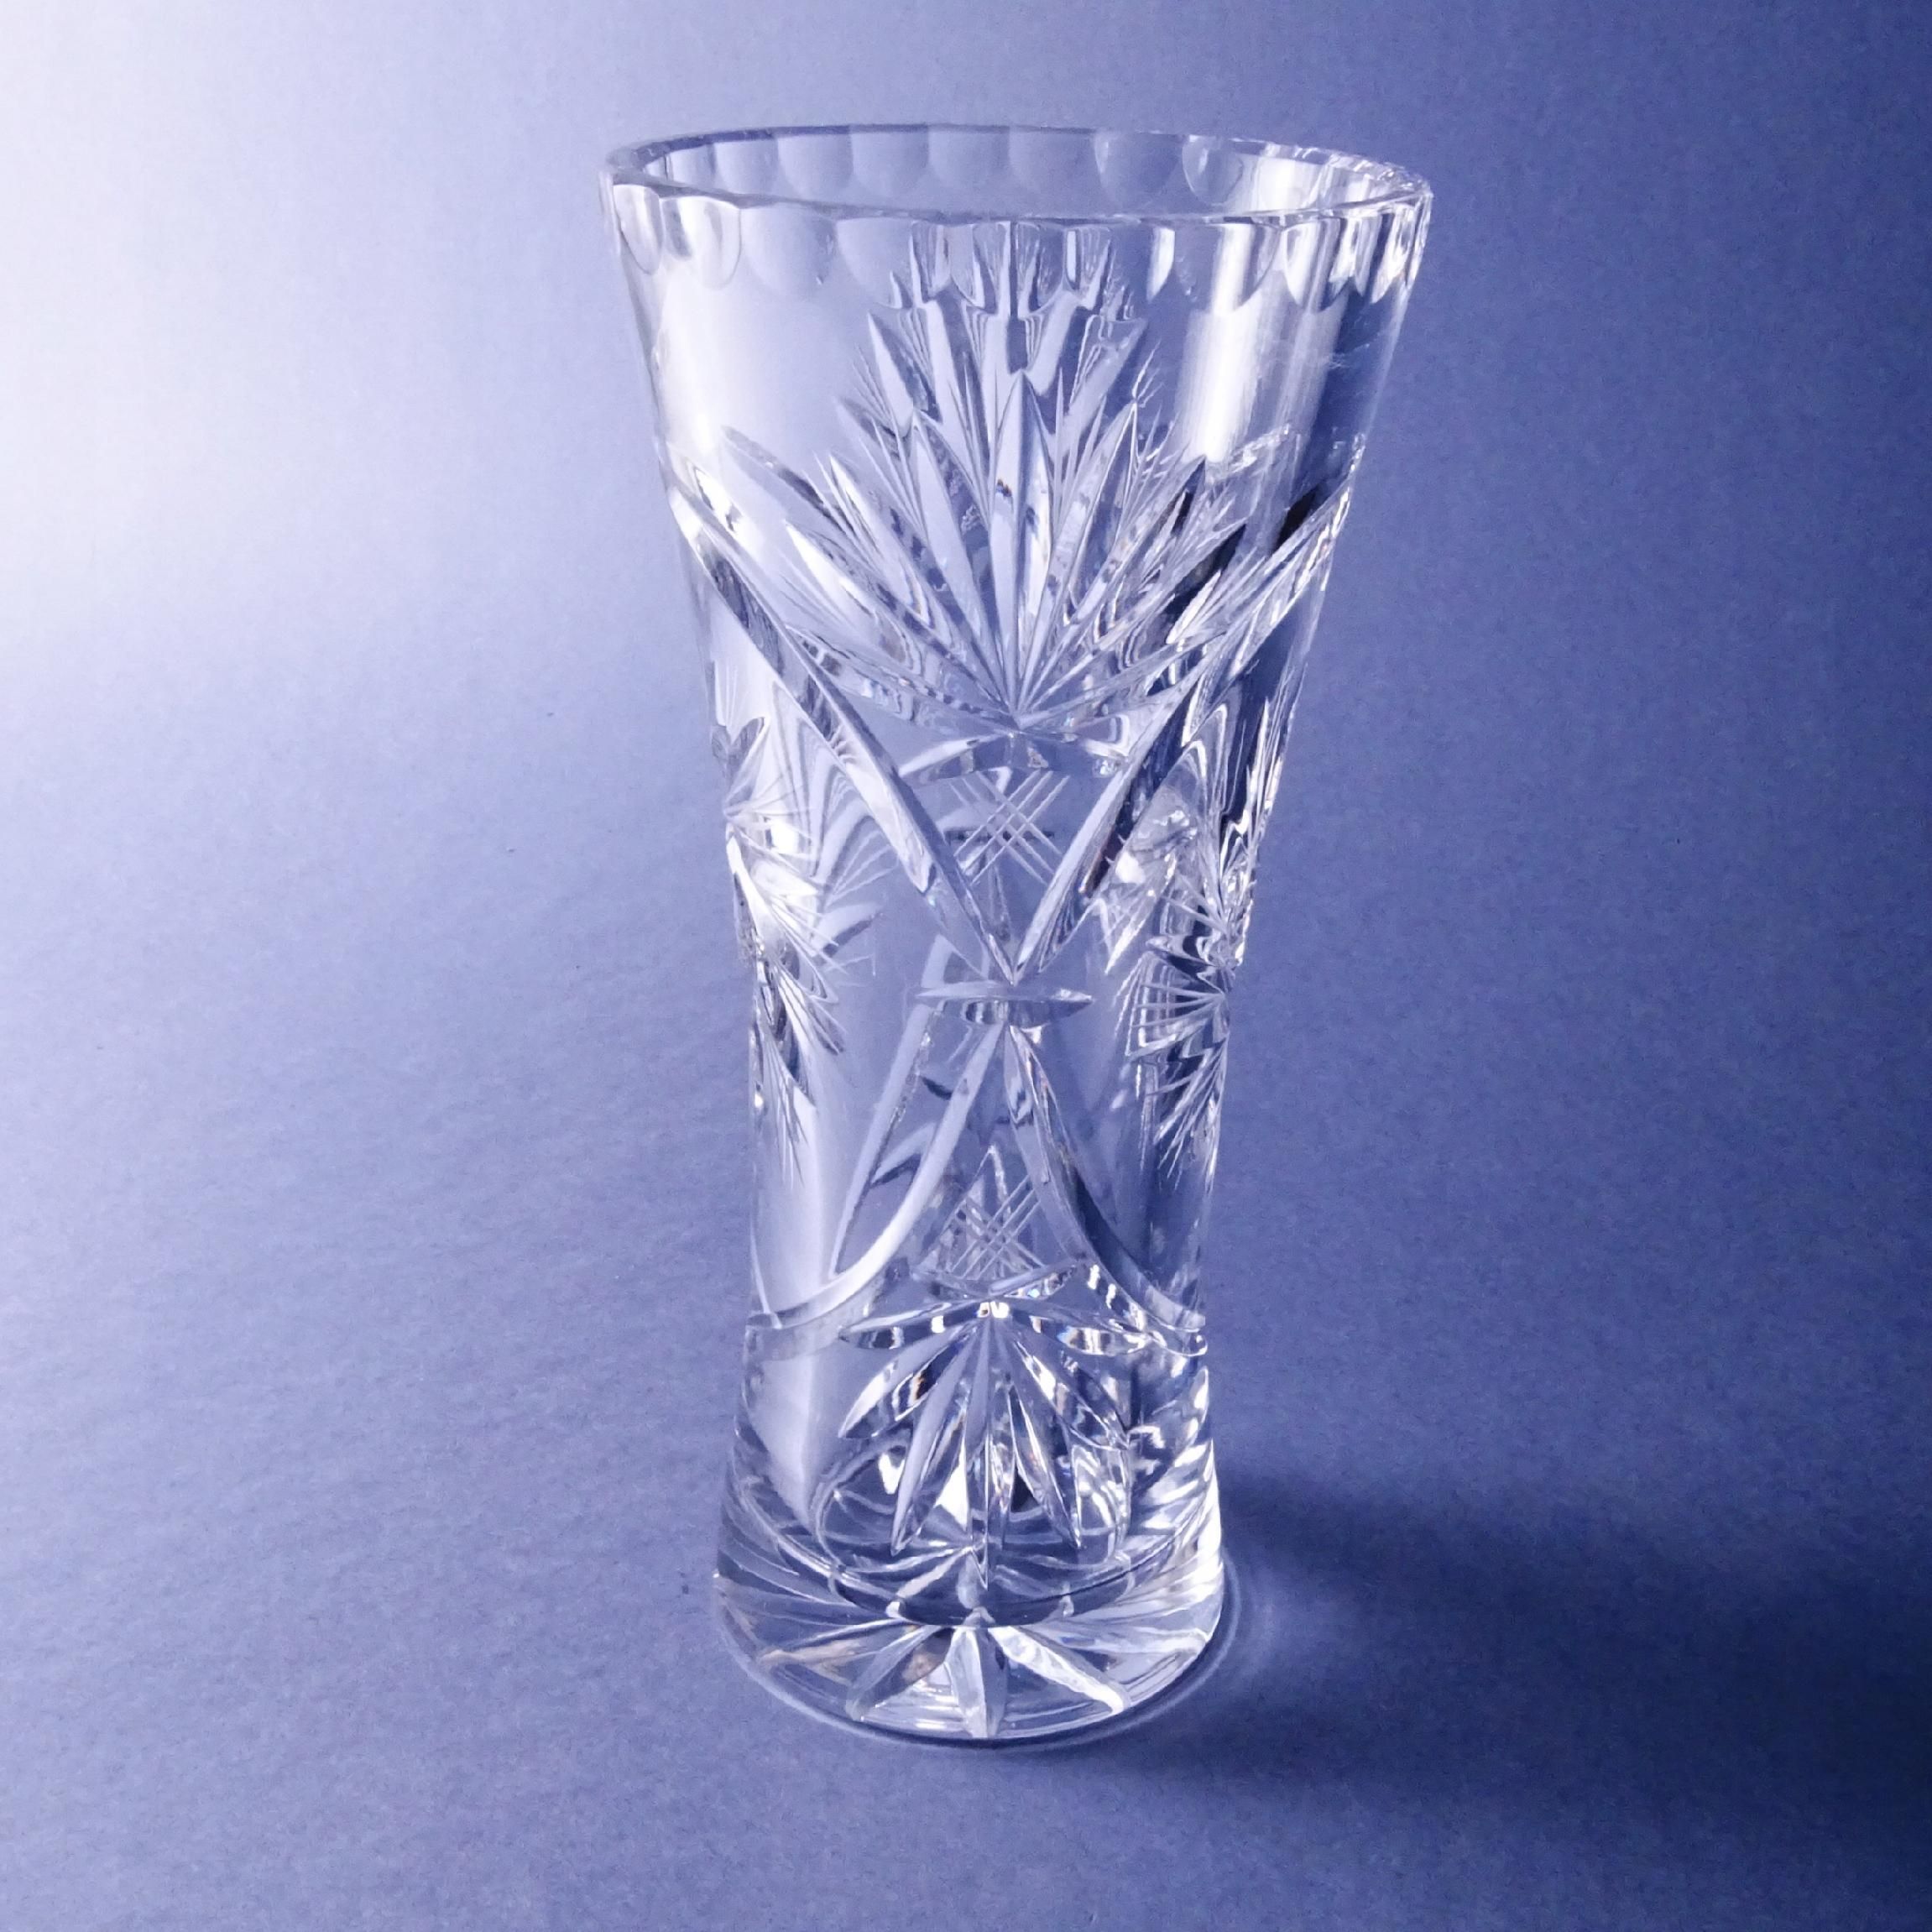 piękny kryształowy szlifowany wazon